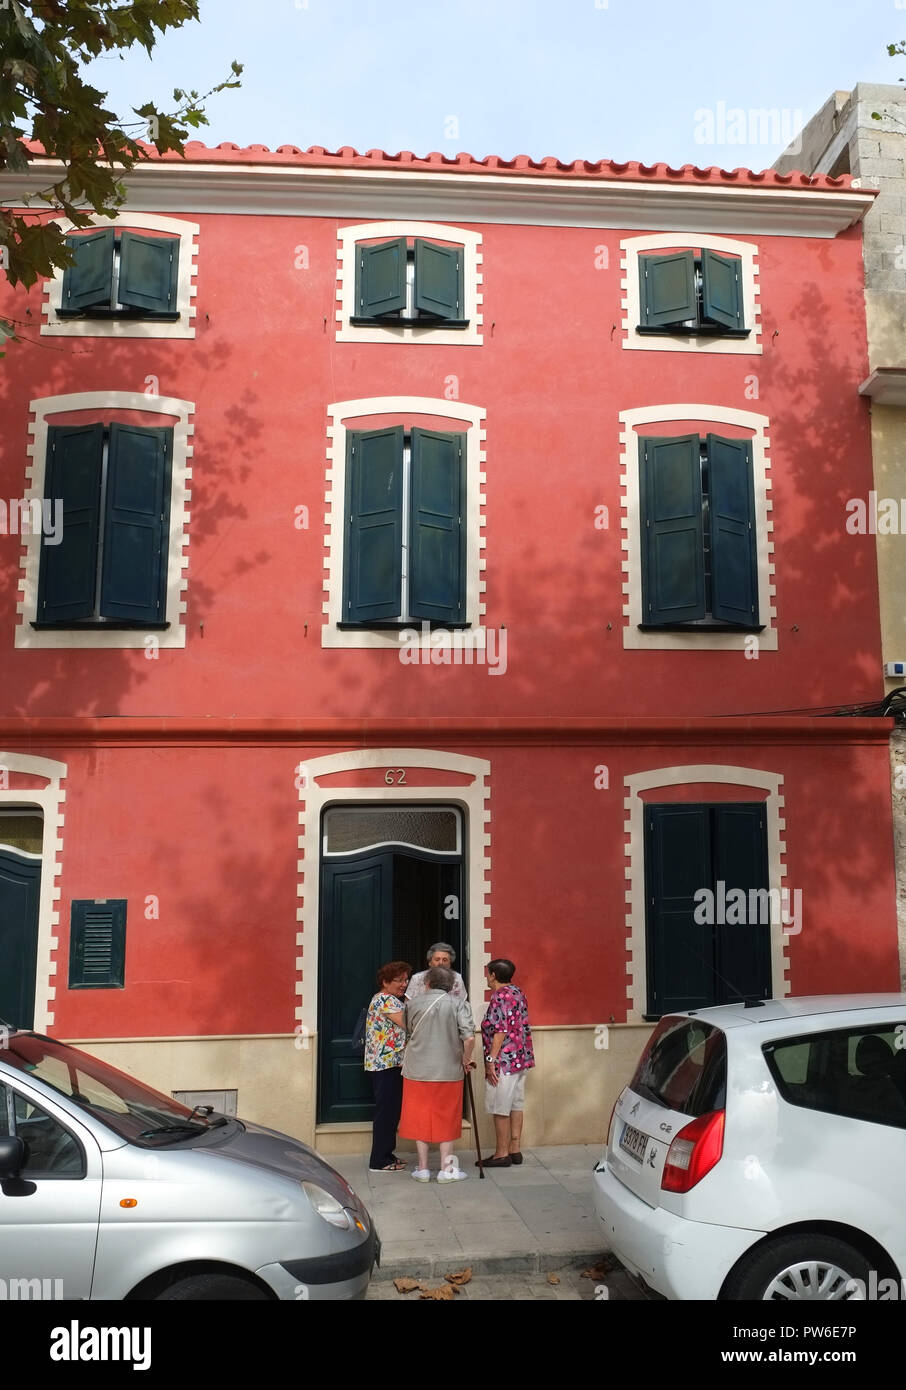 4 le donne anziane parlare sulla soglia di un dipinto di rosso casa in Carrer Victori, Es Castell, Menorca, Spagna. Serrande coprire tutte le finestre Foto Stock